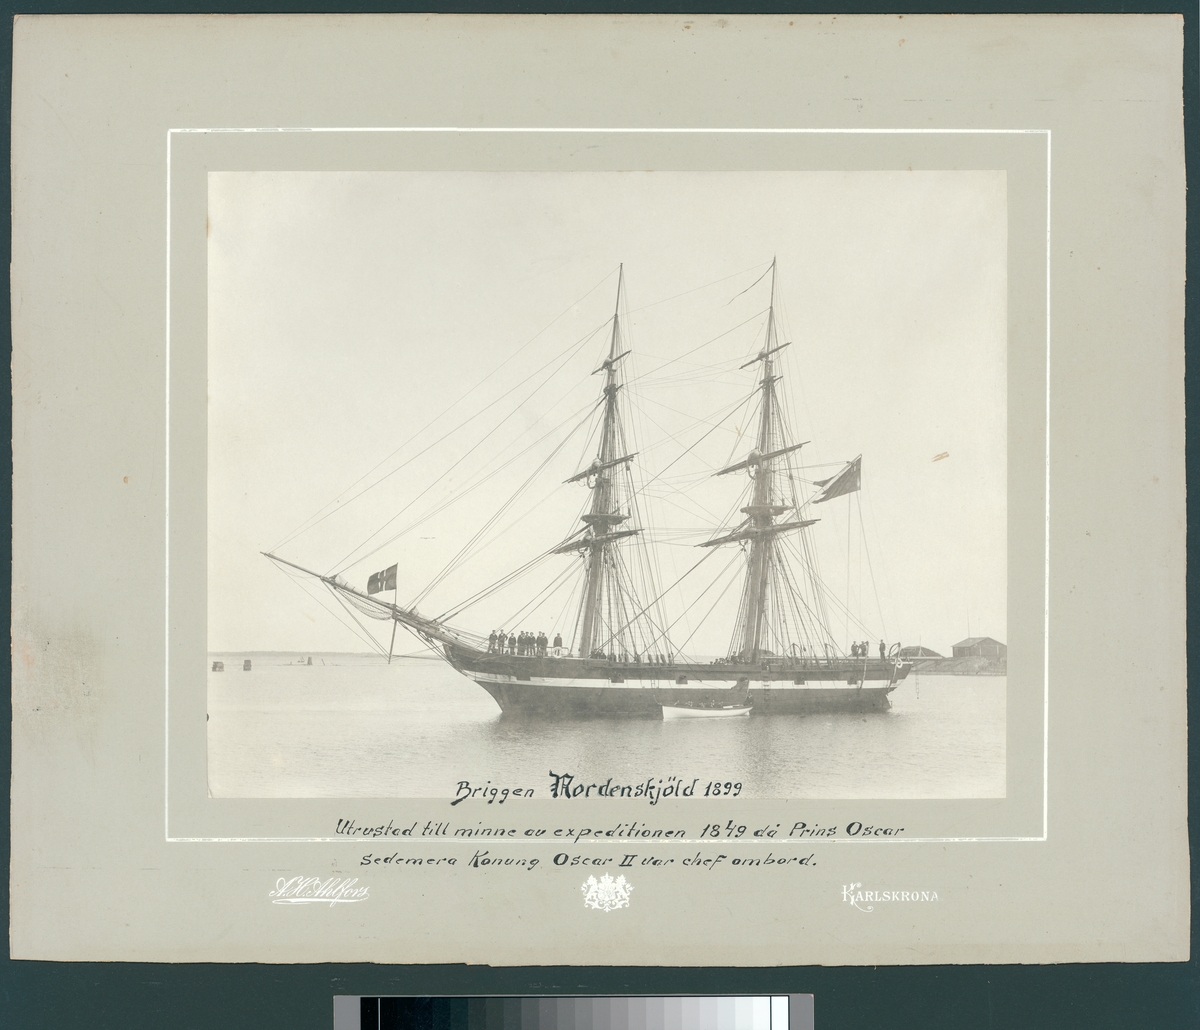 Bilden visar briggen Nordenskjöld från babordssidan till ankars i Karlskrona. Briggen är utrustad till minne av expeditionen 1849 då Prins Oscar senare Konung Oscr II var chef ombord.